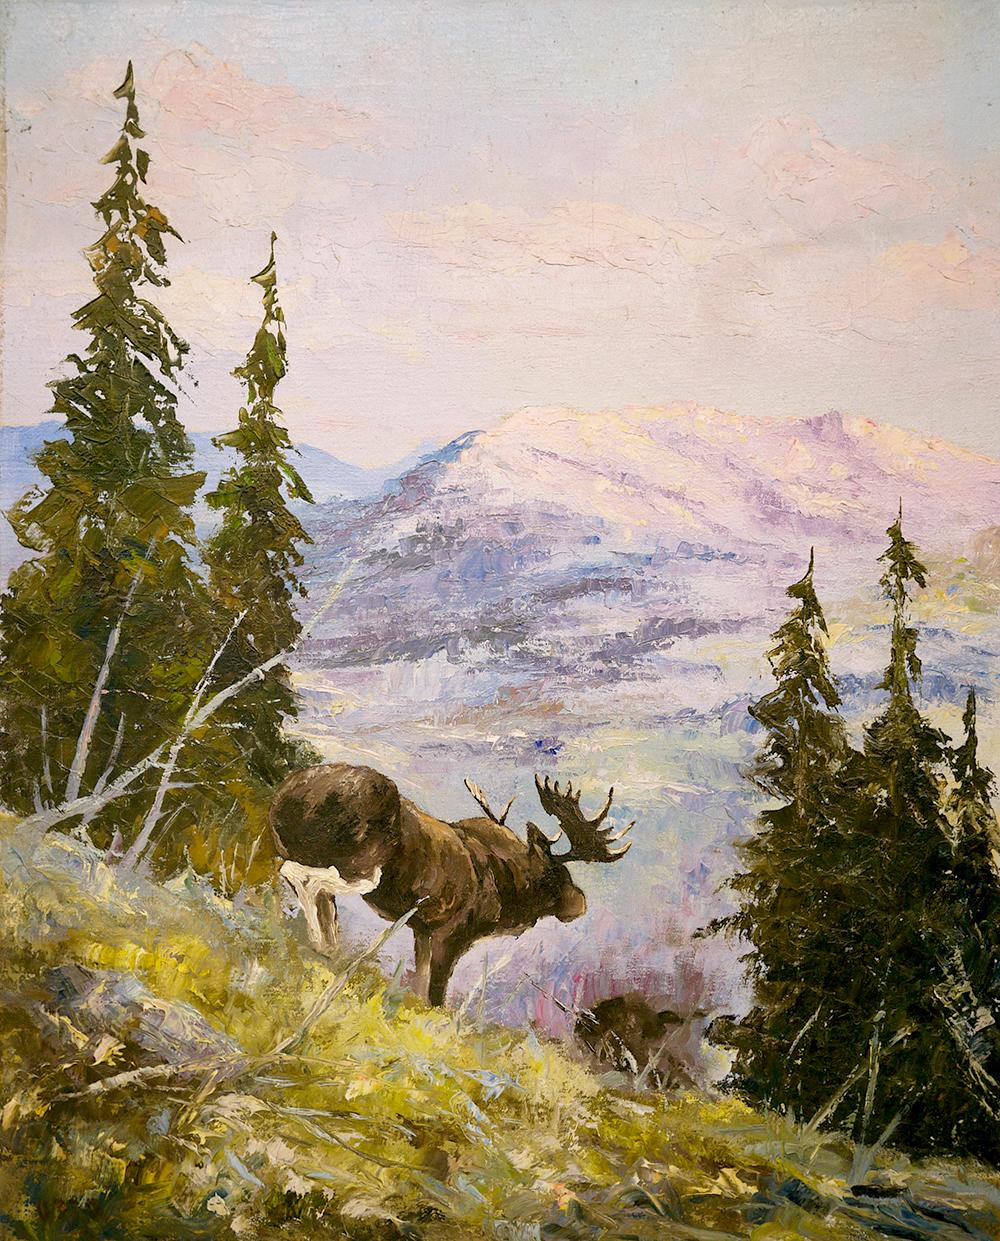 Paysage des montagnes Rocvky avec un élan 

50 x 40 cm (dimensions se référant uniquement à la peinture).
Peinture à l'huile sur toile.

Peinture représentant un élan dans les montagnes Rocheuses.

Le peintre capte un aperçu de la nature,